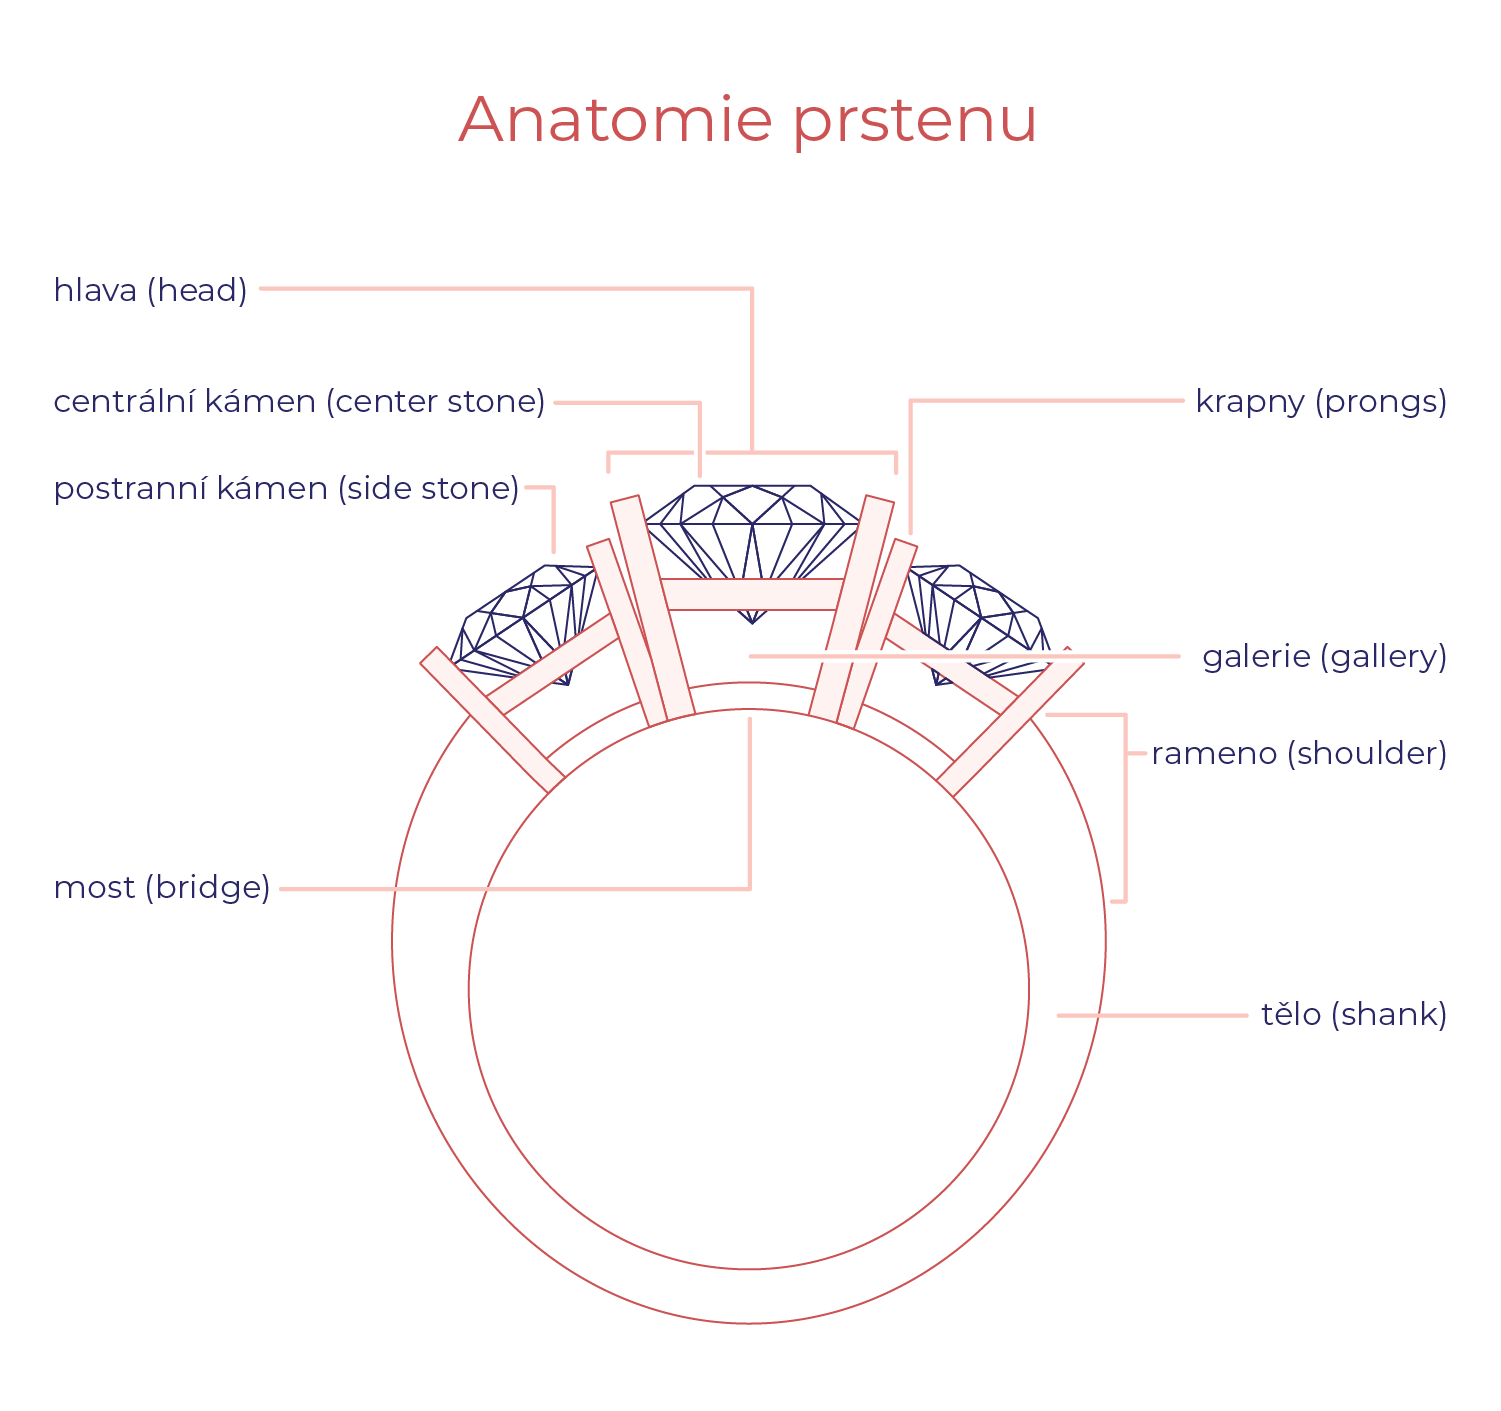 Anatomie prstenu